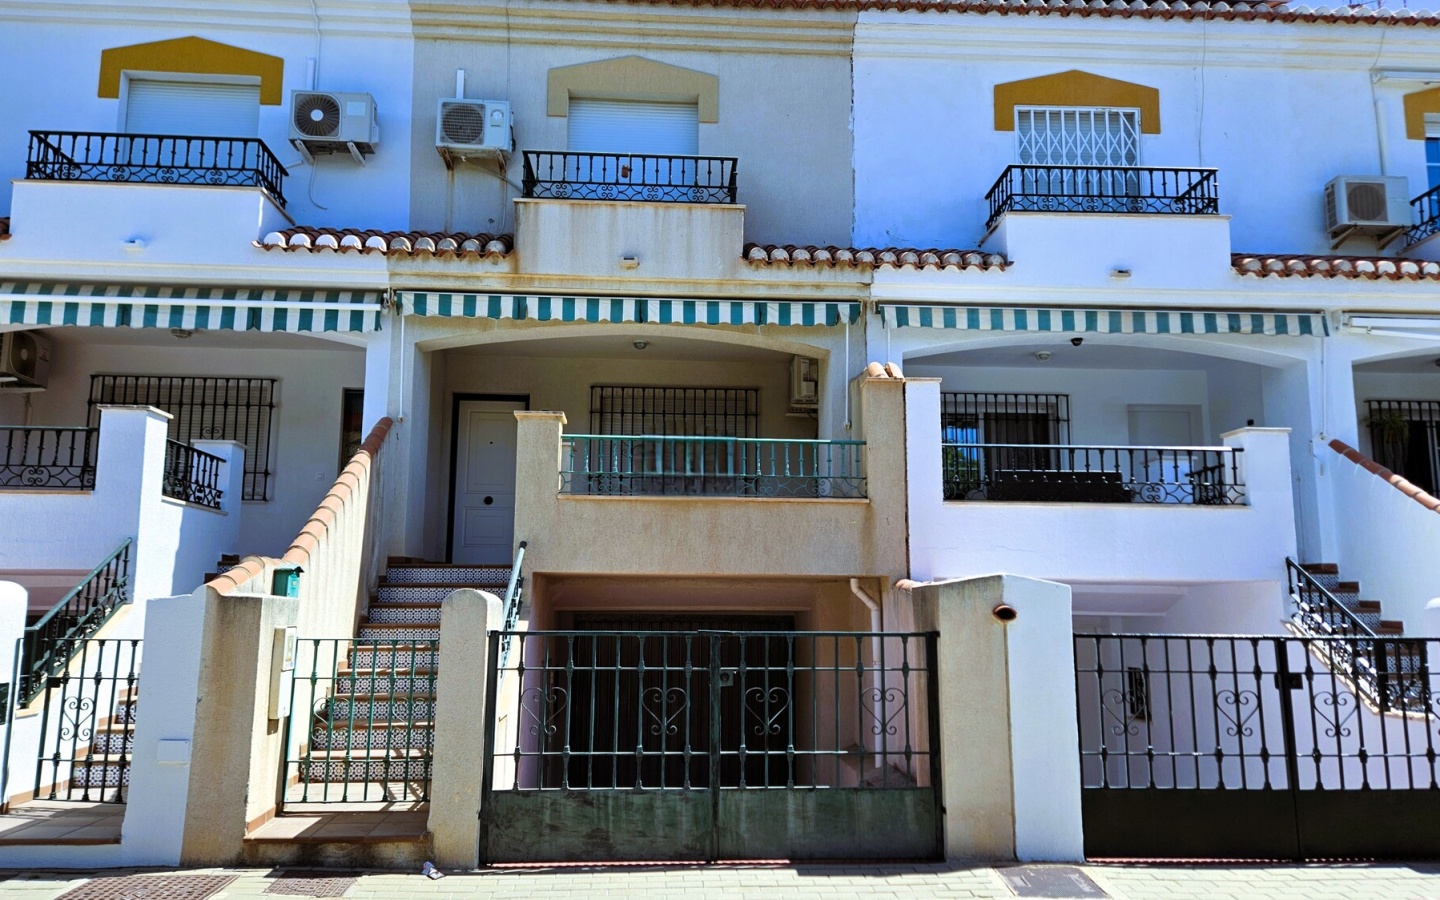 Salobreña. Three/four bedroom house